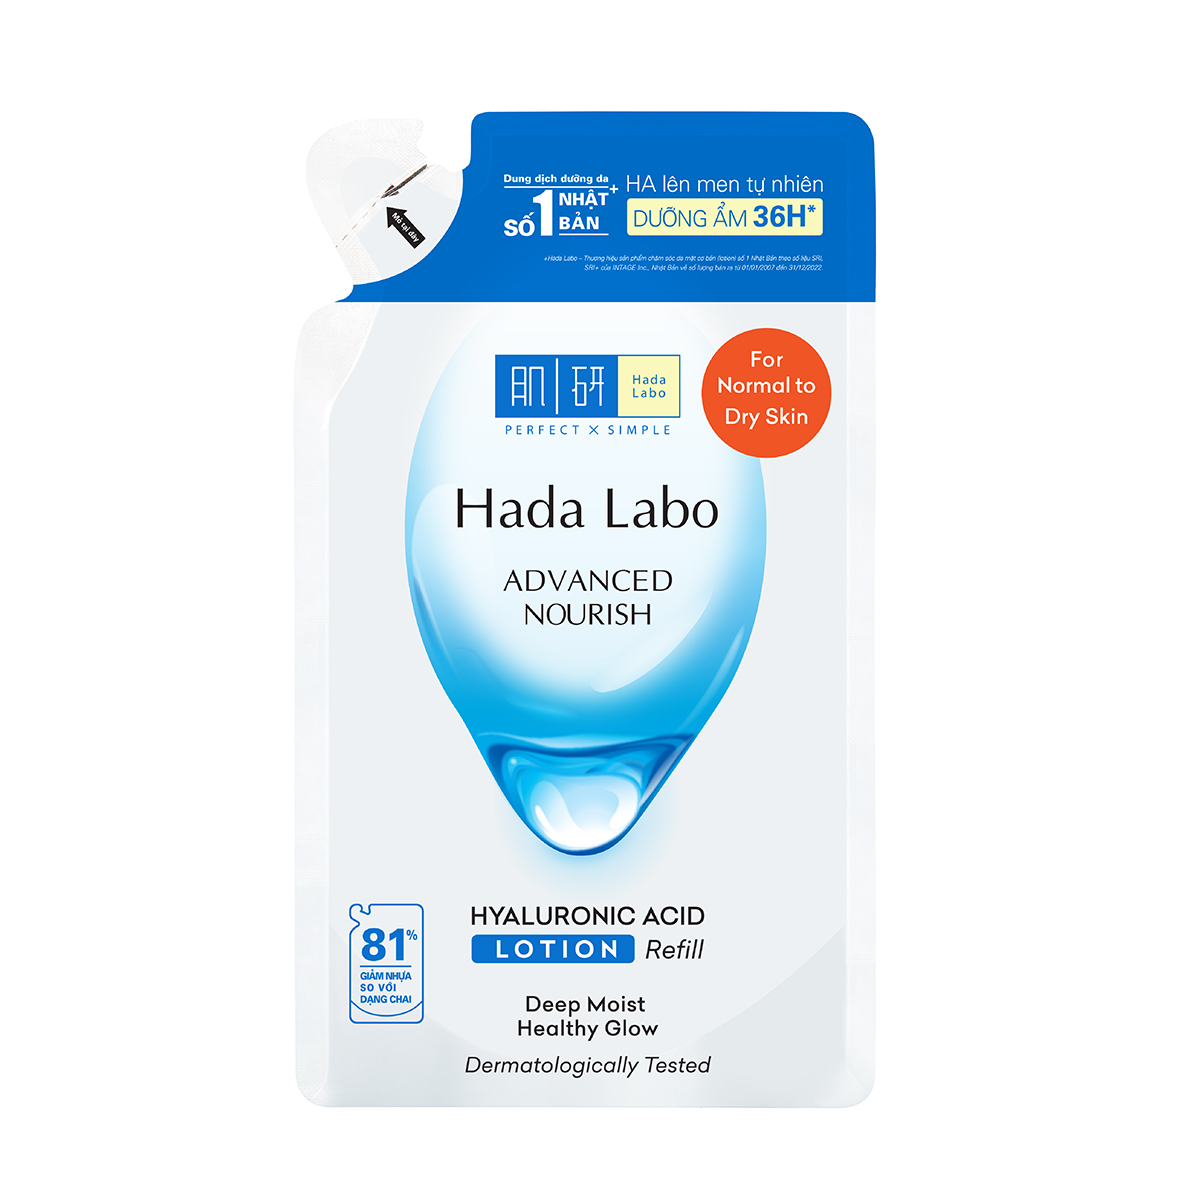 Dung dịch dưỡng ẩm Hada Labo Advance Nourish Hyaluronic Acid cho da thường, da khô 170ml (Dung dịch thay thế)